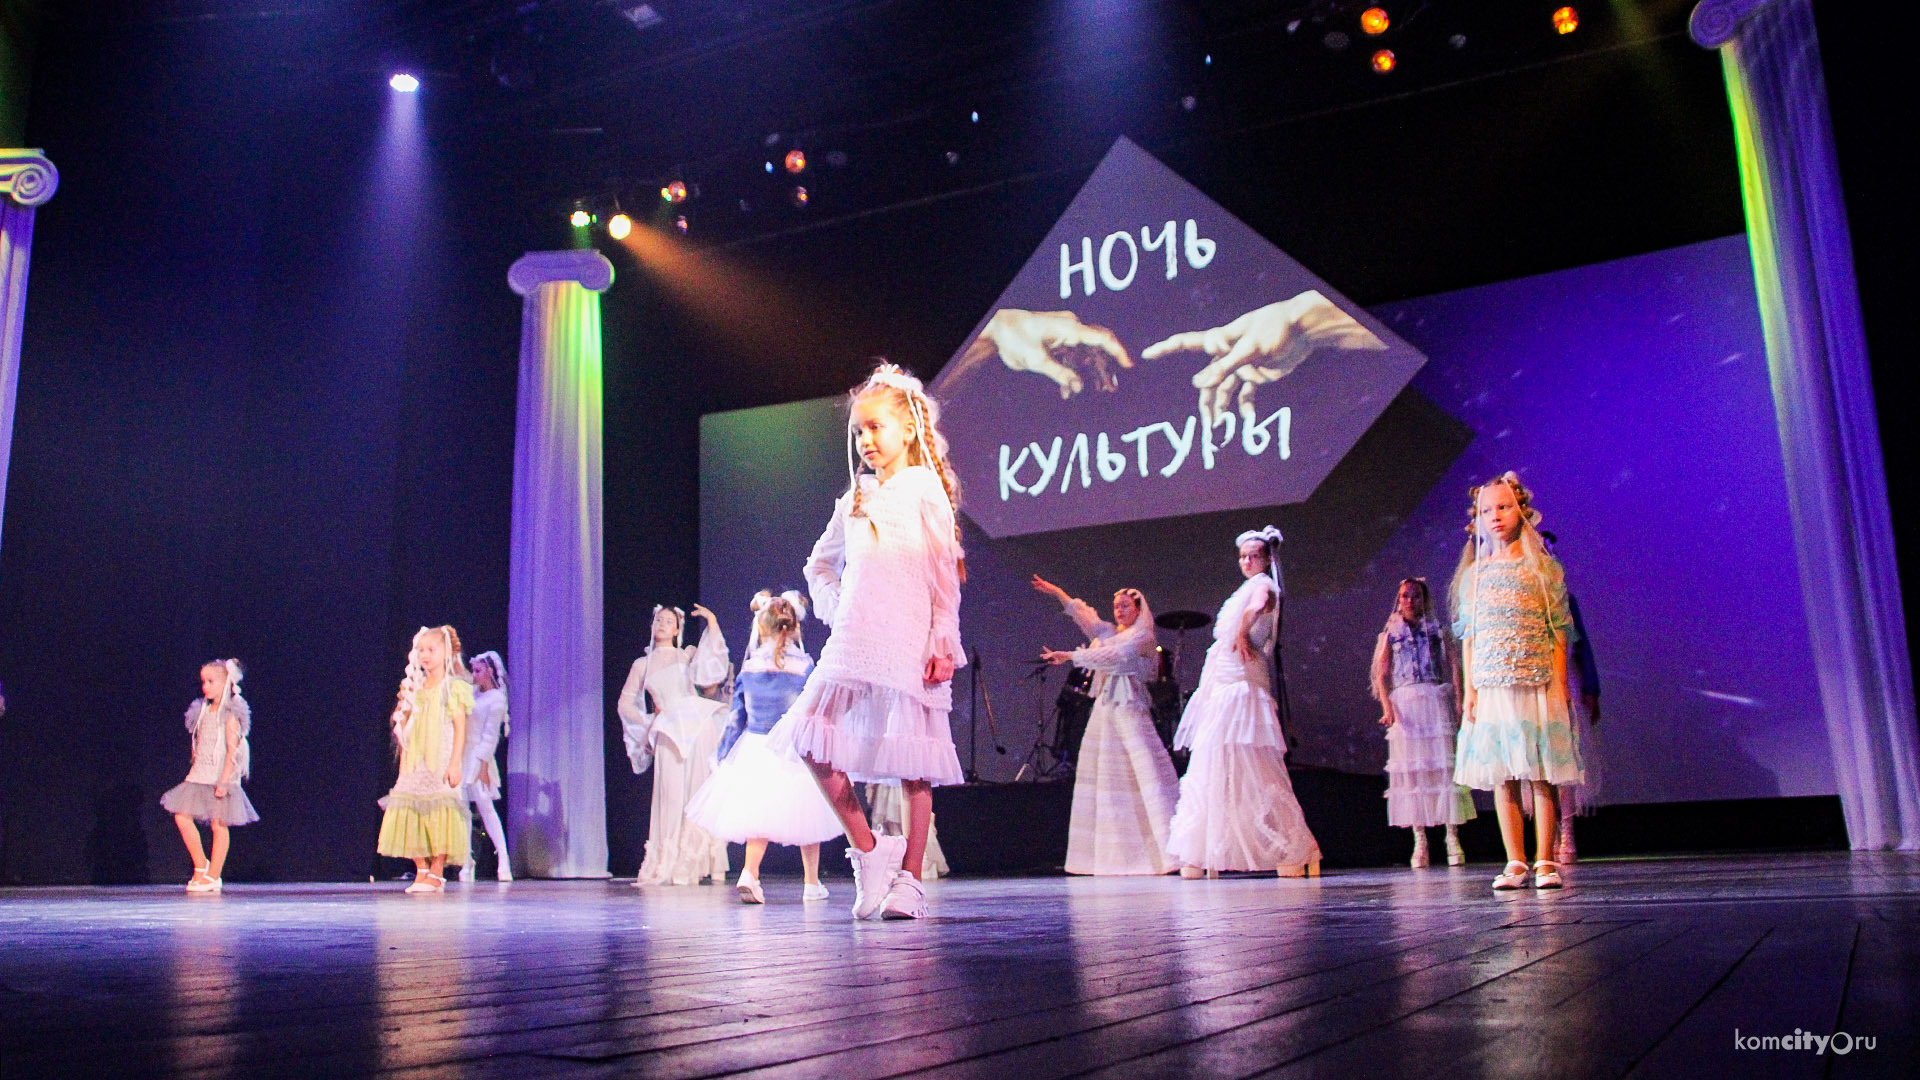 «Ночь культуры» вернулась в Комсомольск-на-Амуре после перерыва